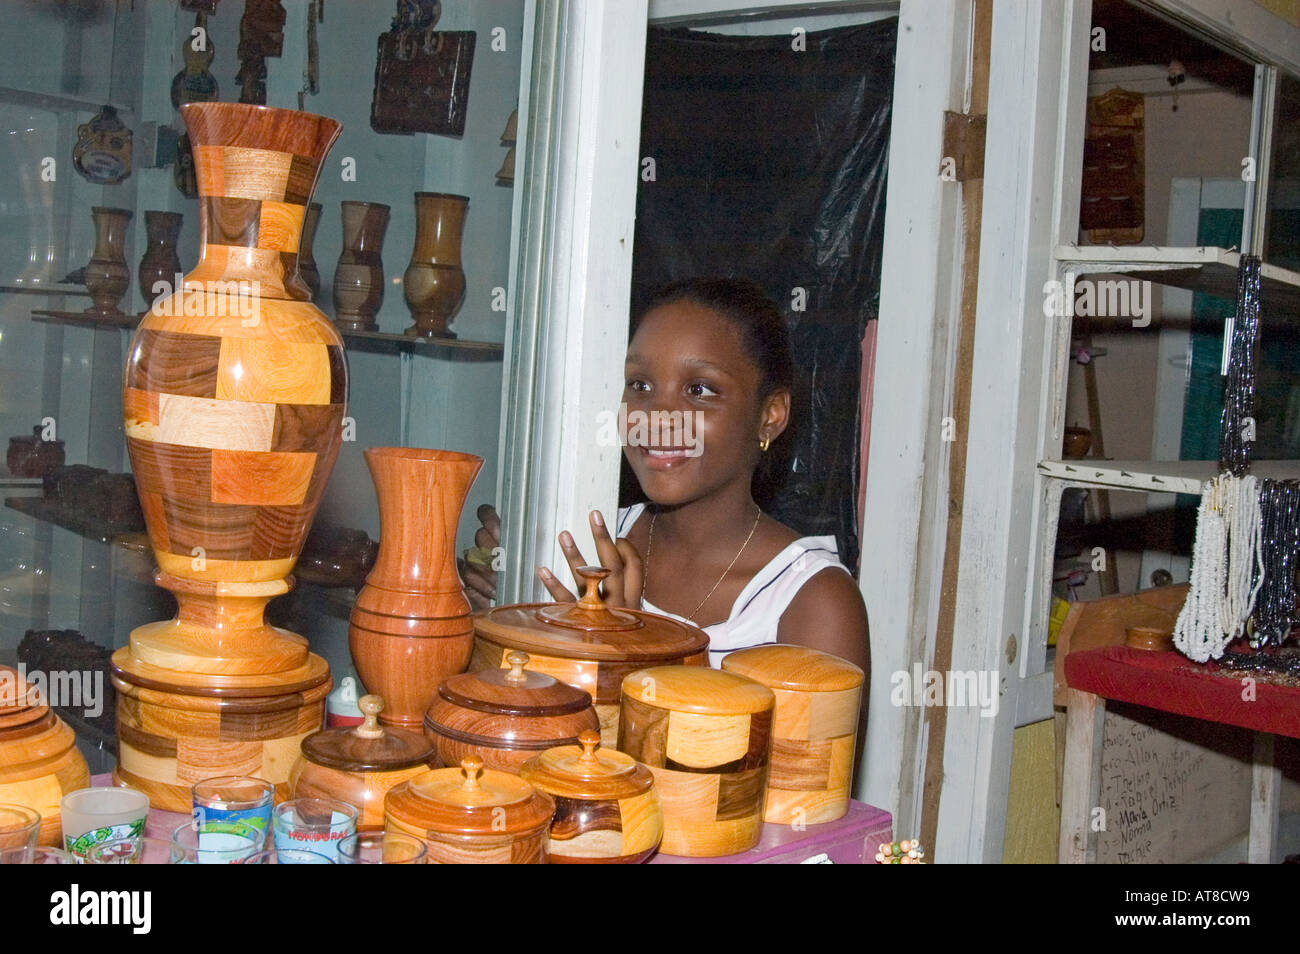 Jeune fille noire avec la sortie de l'artisanat en bois cadeaux Honduras Amérique Centrale Caraïbes de l'Ouest Banque D'Images